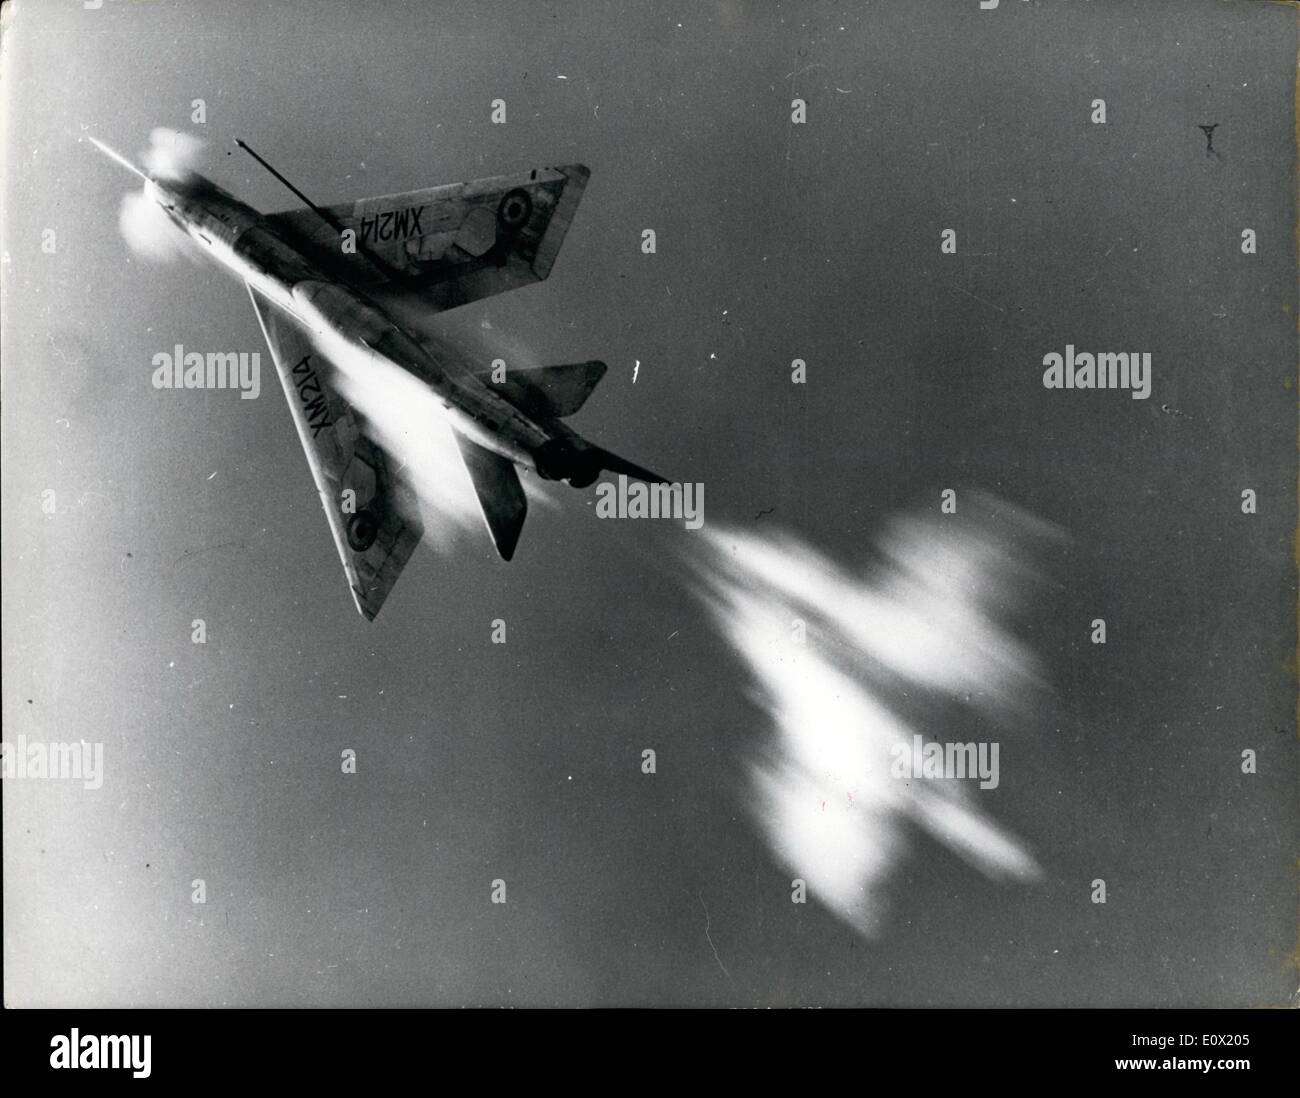 Il 12 Dic. 1964 - ufficiale britannico fotografia fantasmi nel cielo come cannoni aprono il fuoco.: un triplo effetto fantasma è raffigurato per la Foto Stock